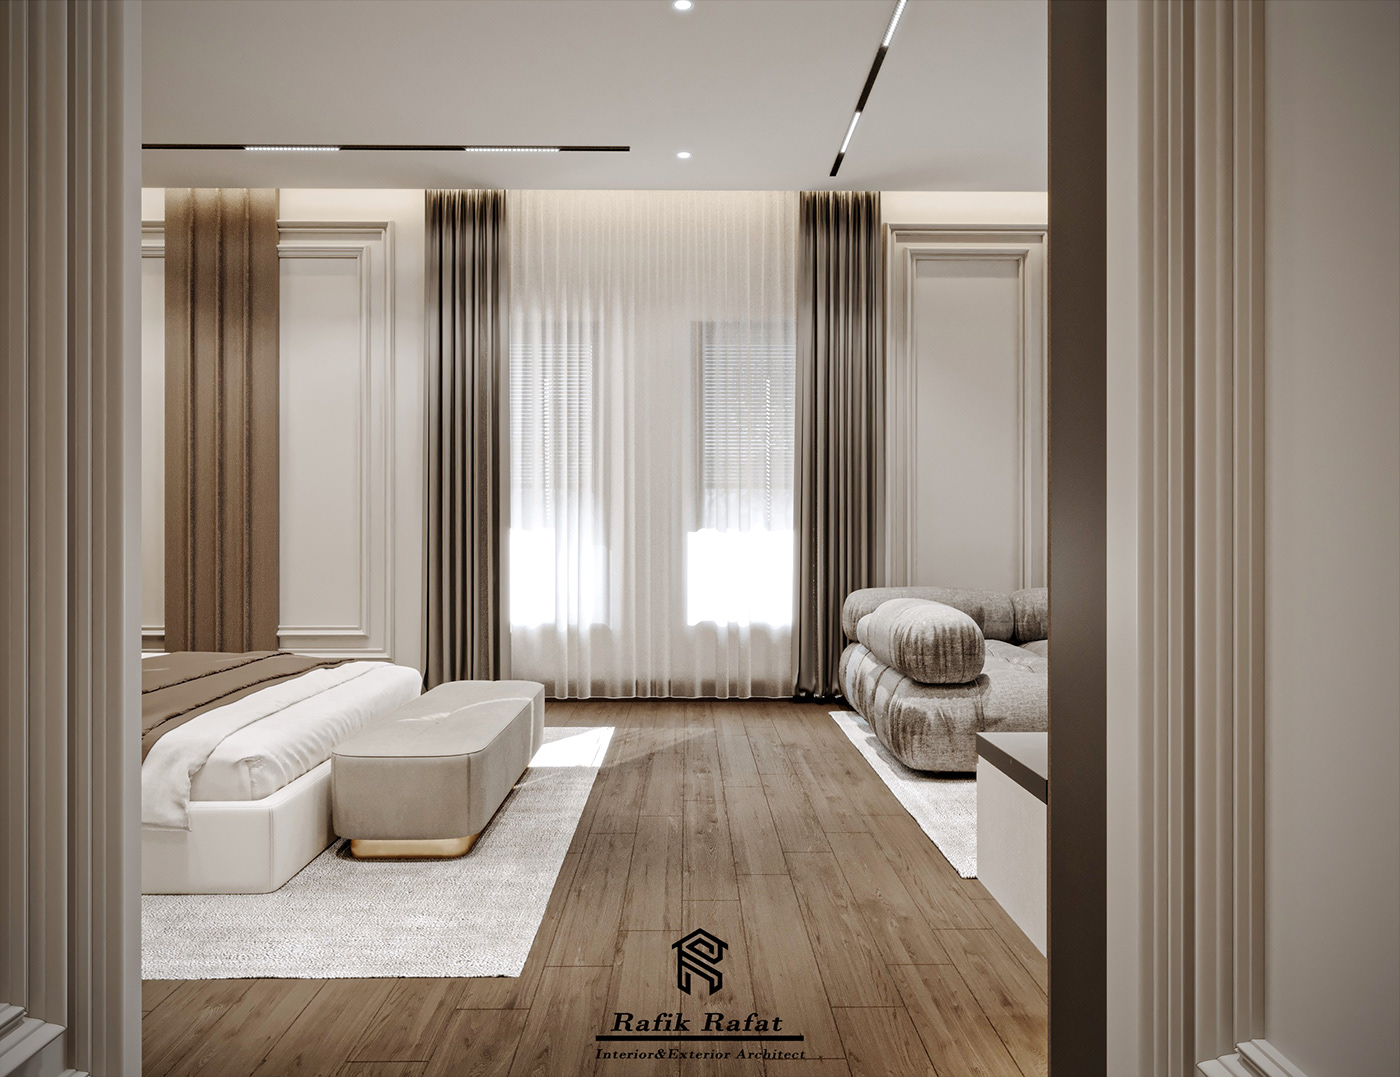 luxury modern bed bedroom design bedroom Bedroom interior 3ds max CGI archviz flat